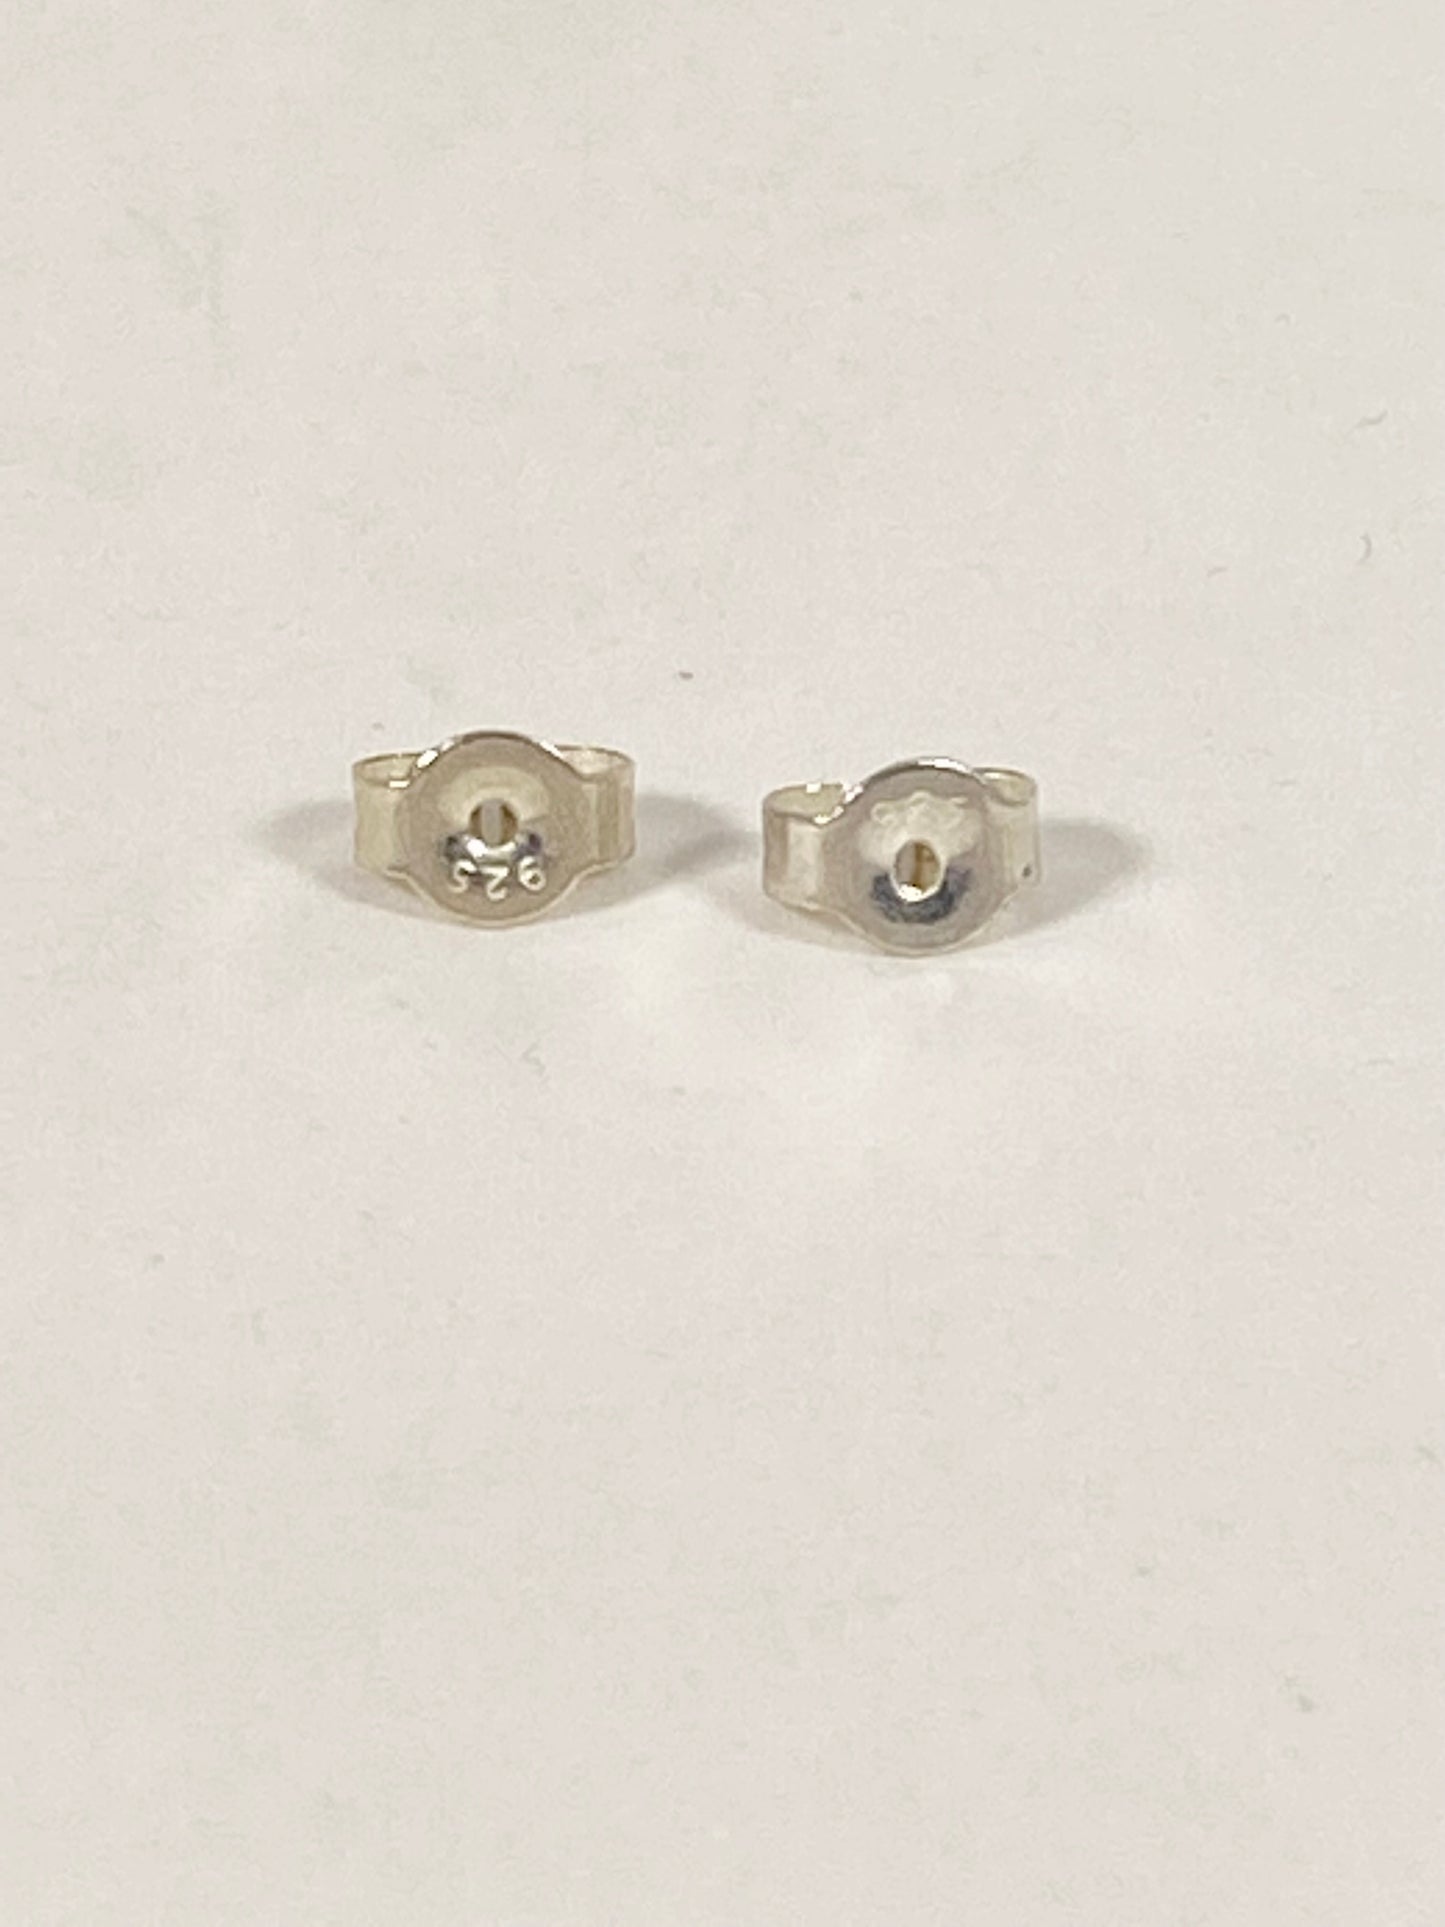 古代/古董爪哇贸易珠 - 约 10 至 14 世纪的千花眼珠耳环，镶嵌在纯银中